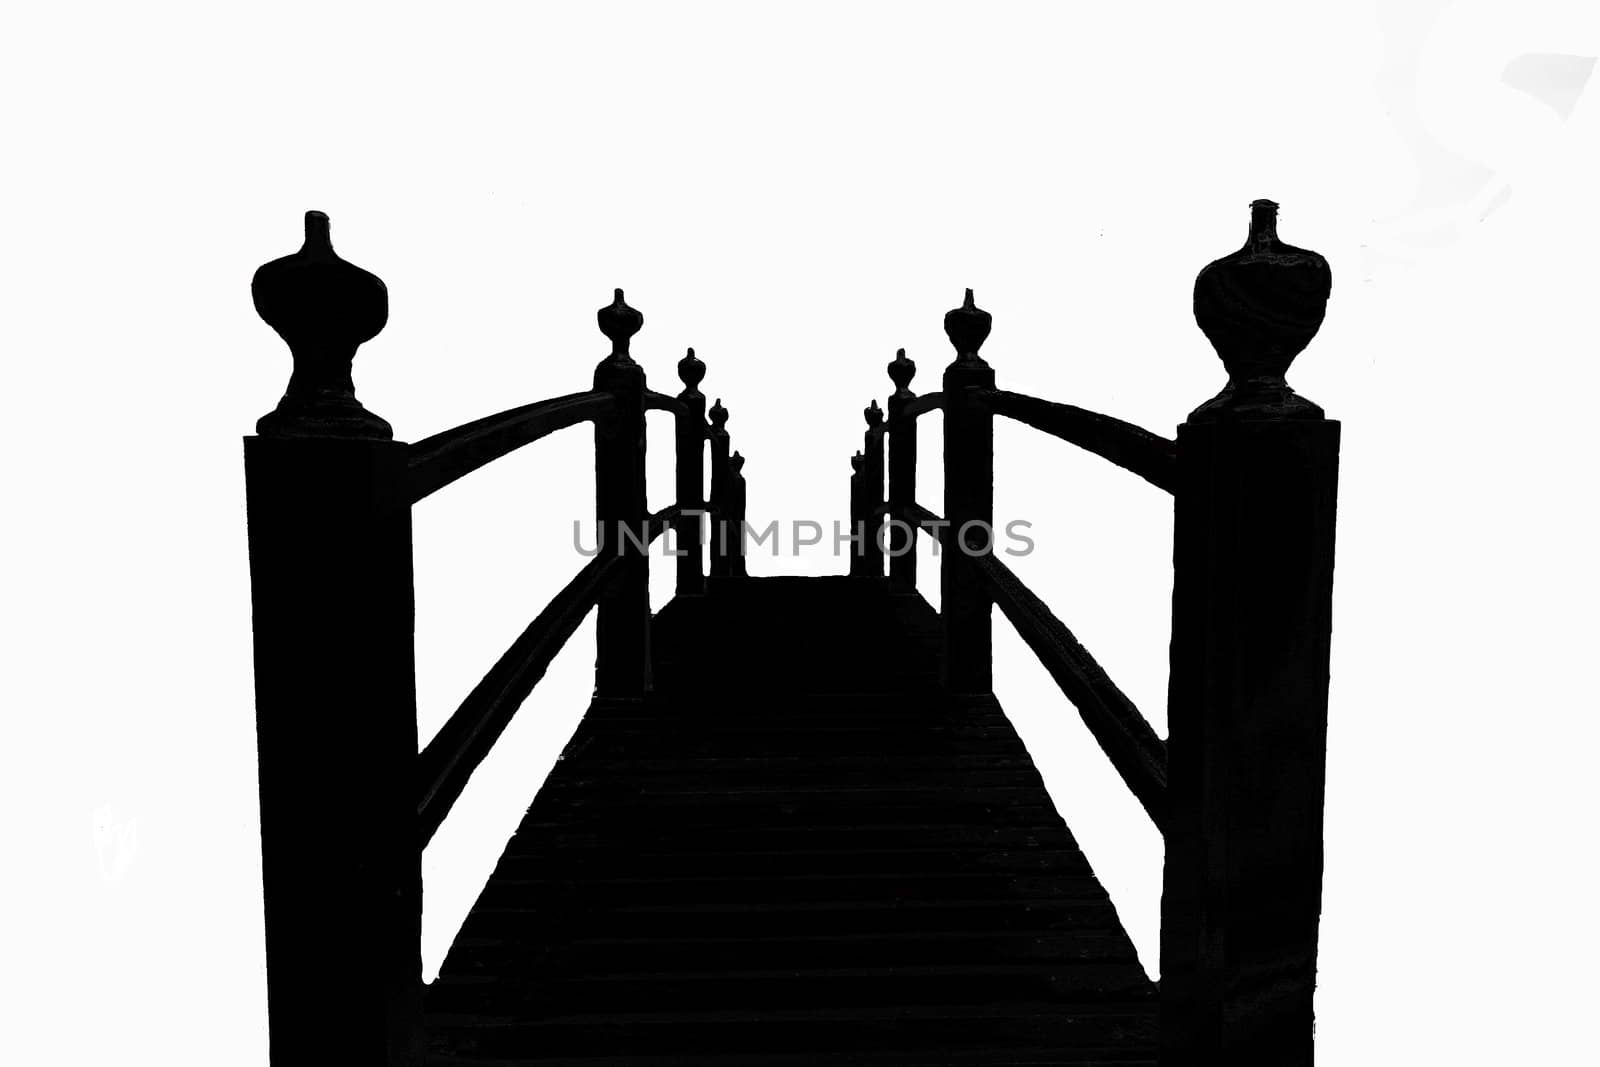 Footwalk bridge in silhouette by dbriyul